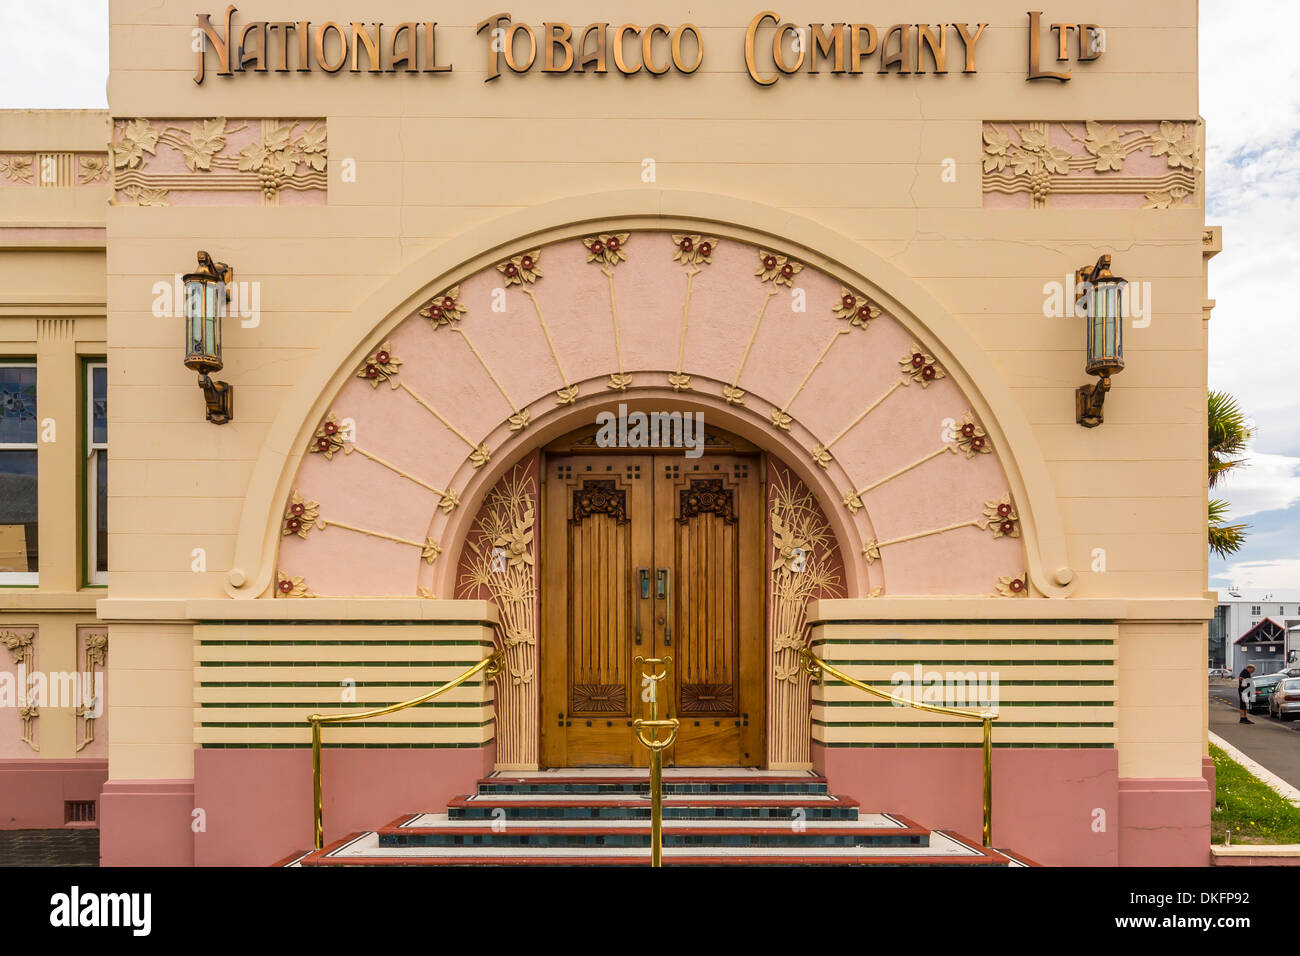 Le style Art Déco des années 1930 de la National Tobacco Company building à Rotorua, île du Nord, Nouvelle-Zélande, Pacifique Banque D'Images